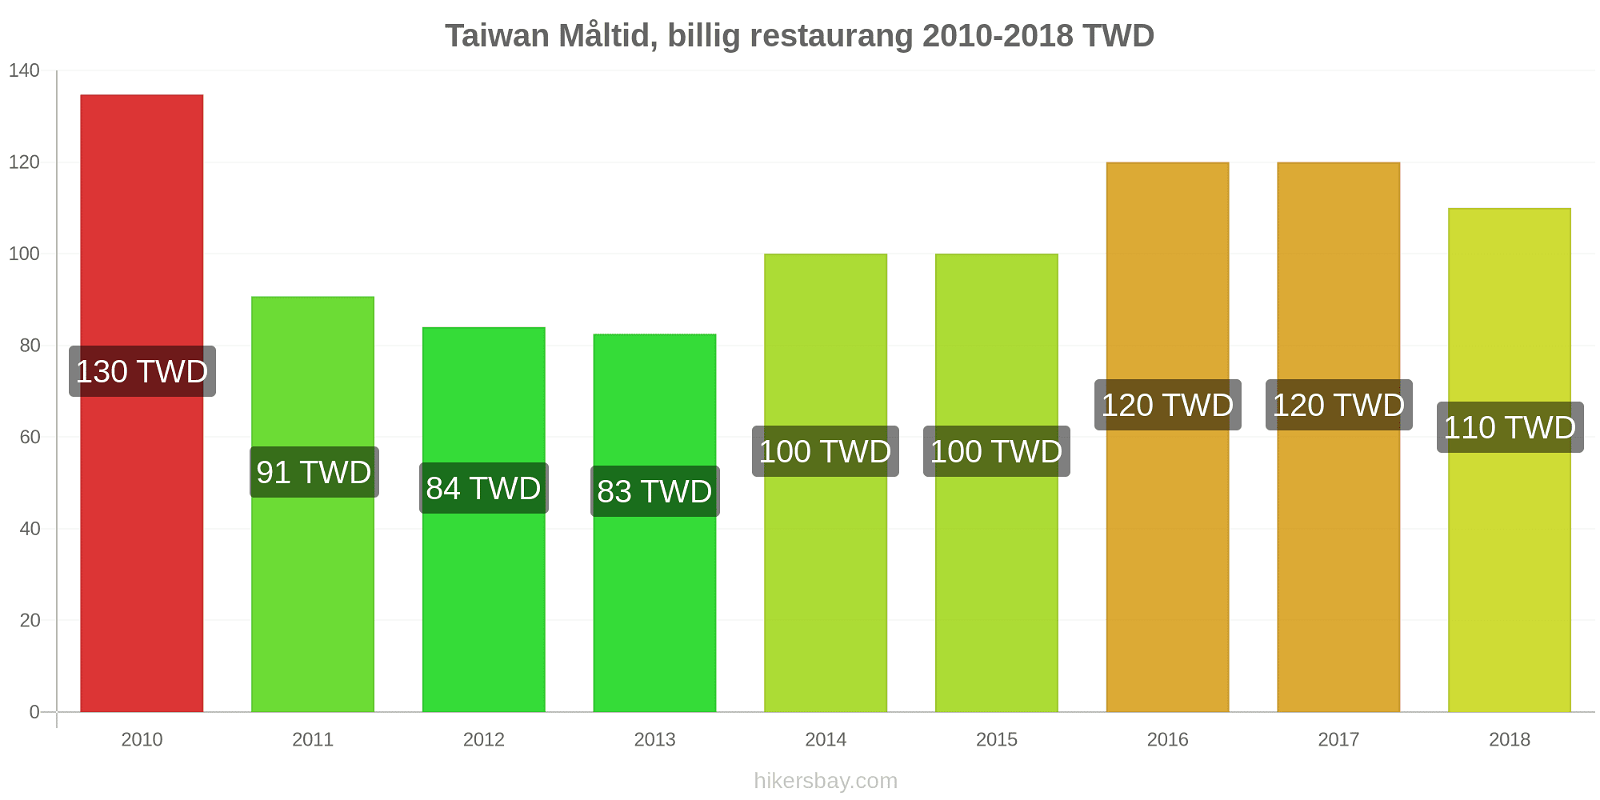 Taiwan prisändringar Måltid i en billig restaurang hikersbay.com